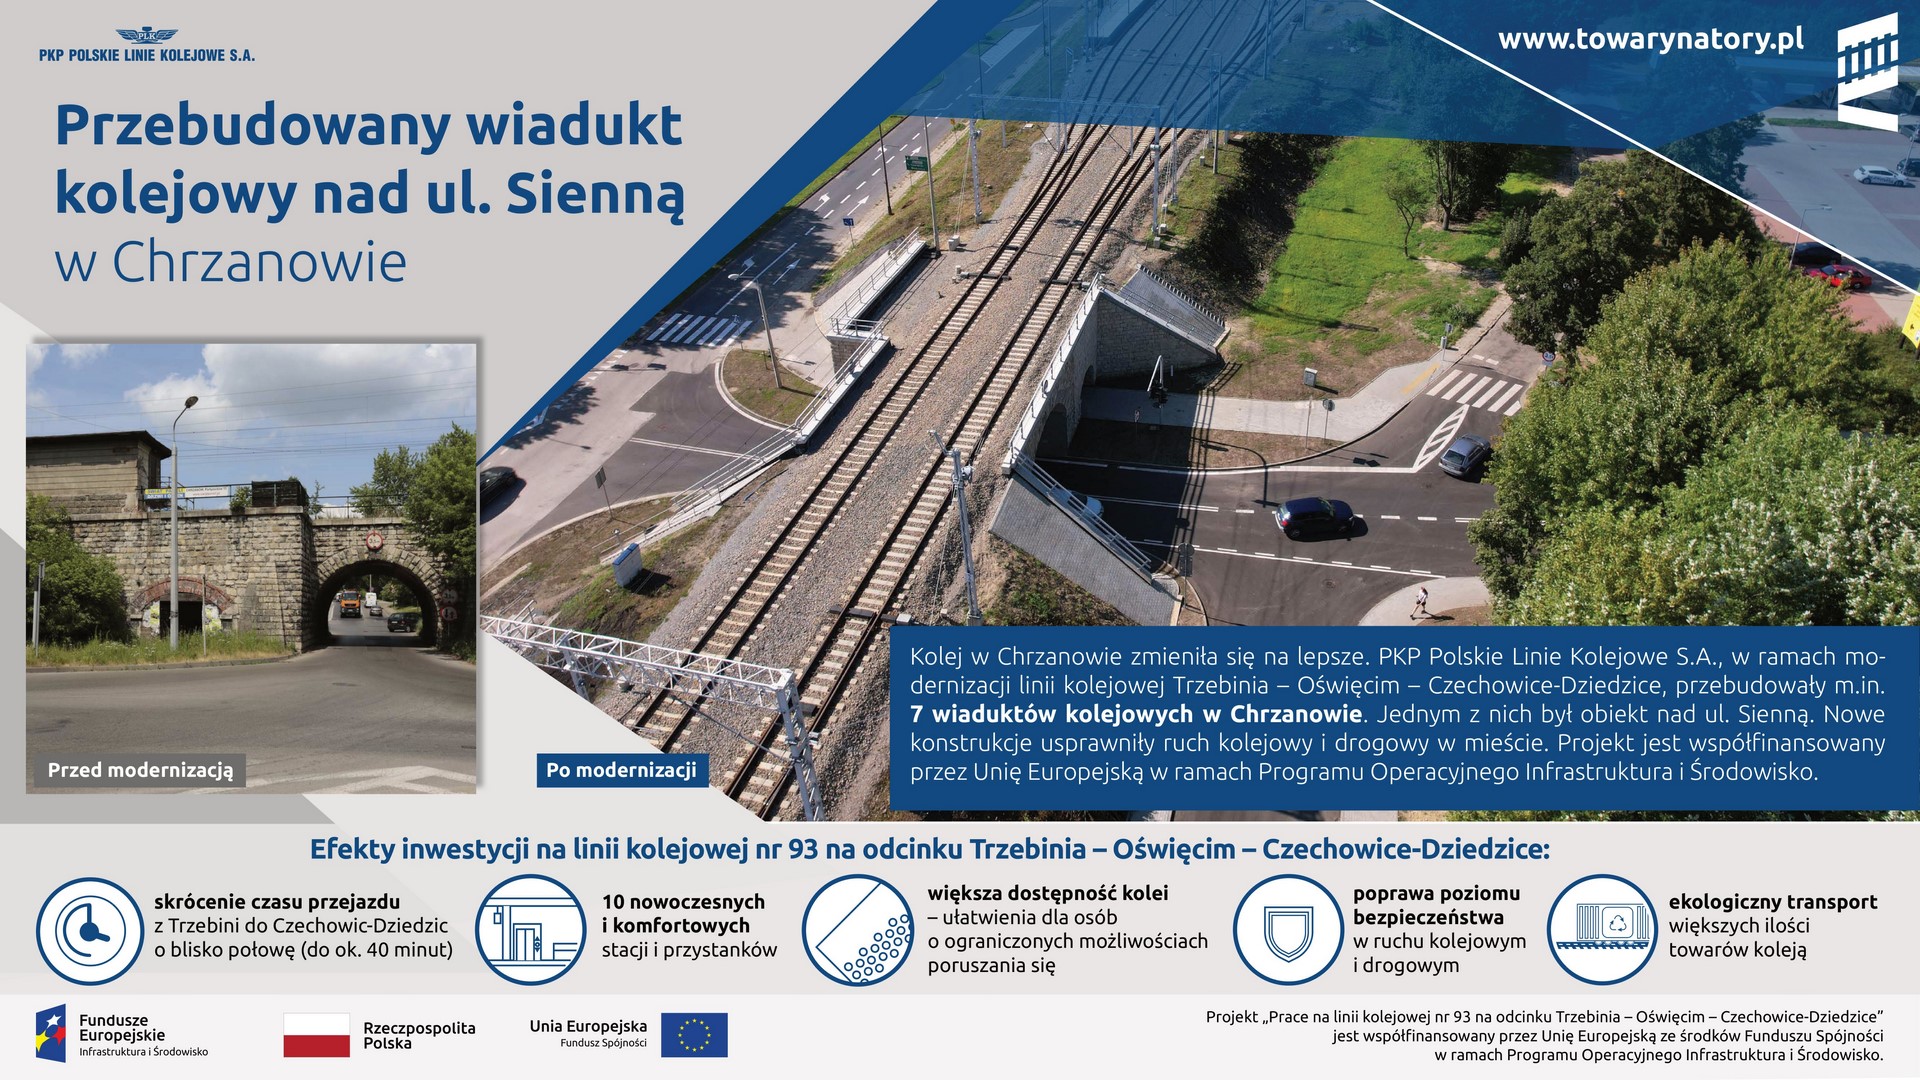 Infografika: przedstawia przebudowany wiadukt kolejowy nad ul. Sienną